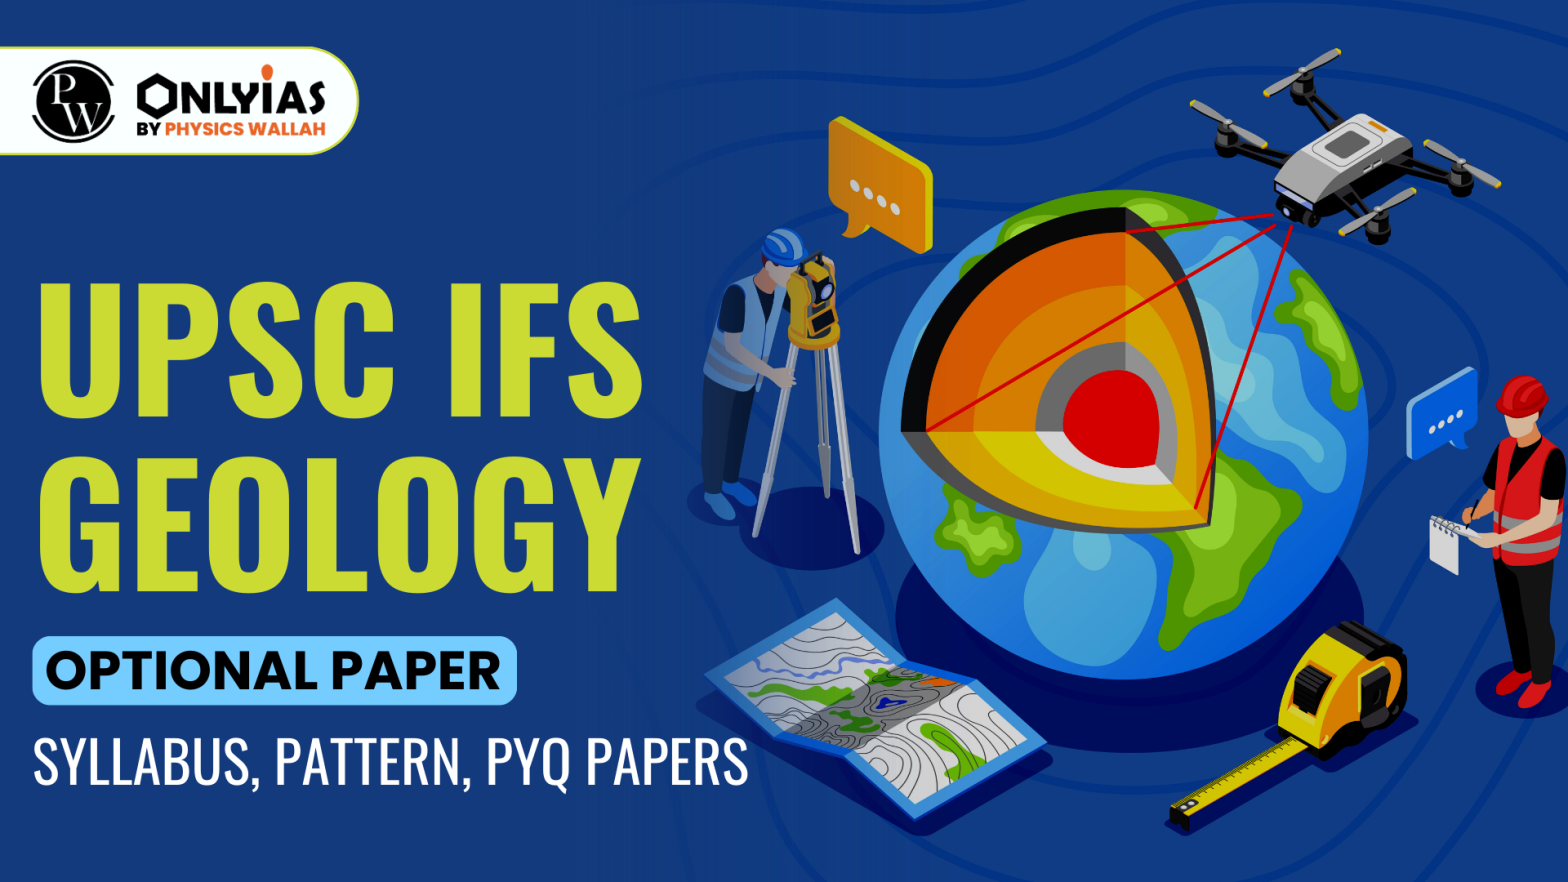 UPSC IFS Geology Optional Paper: Syllabus, Pattern, PYQ Papers